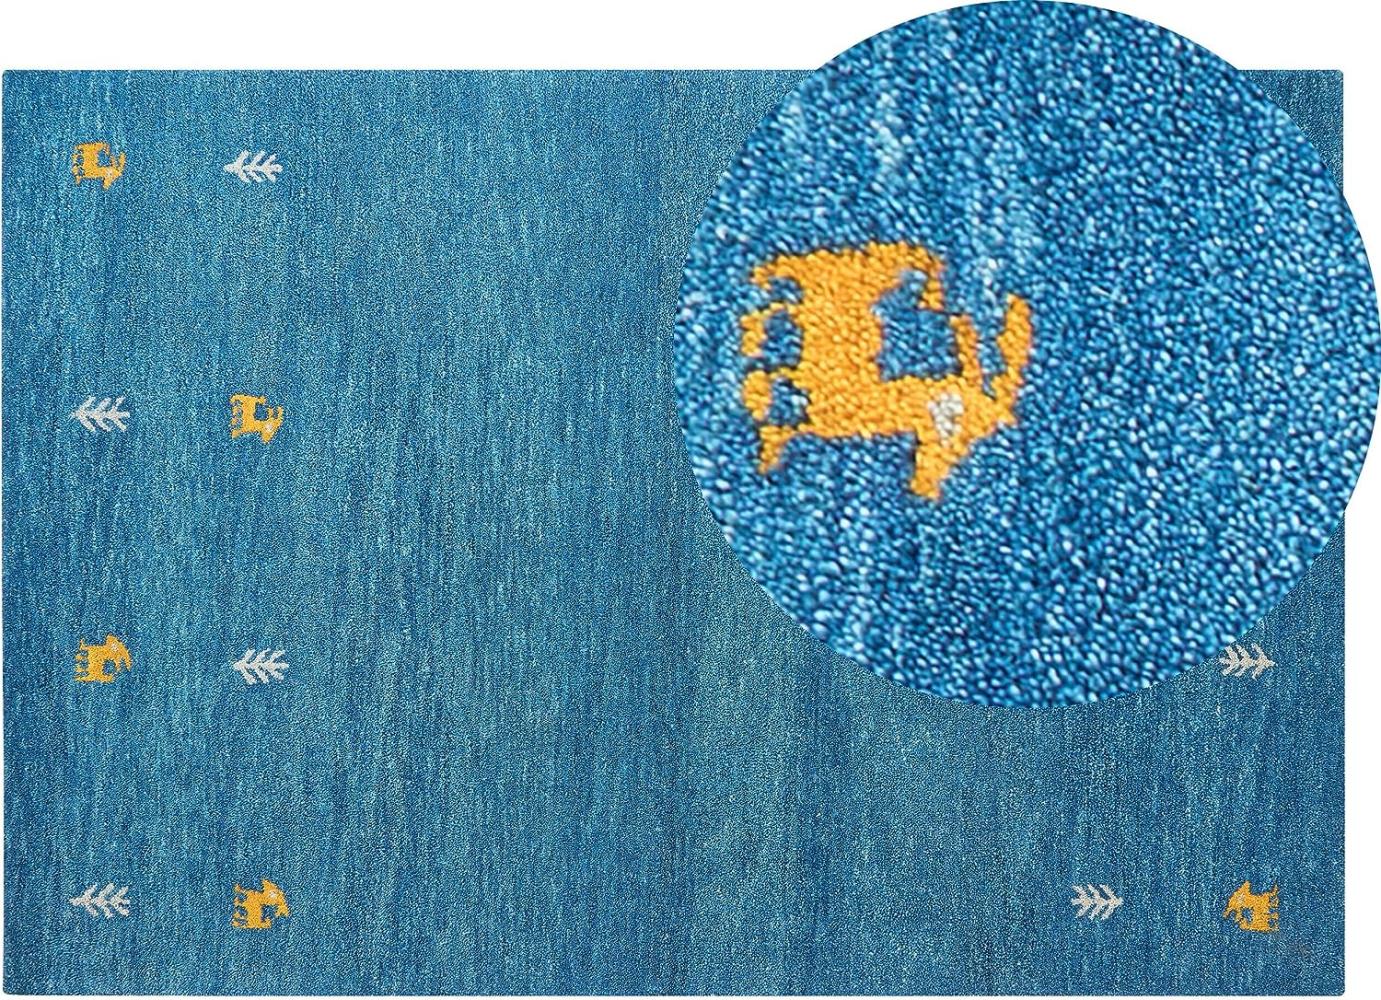 Gabbeh Teppich Wolle blau 140 x 200 cm Kurzflor CALTI Bild 1